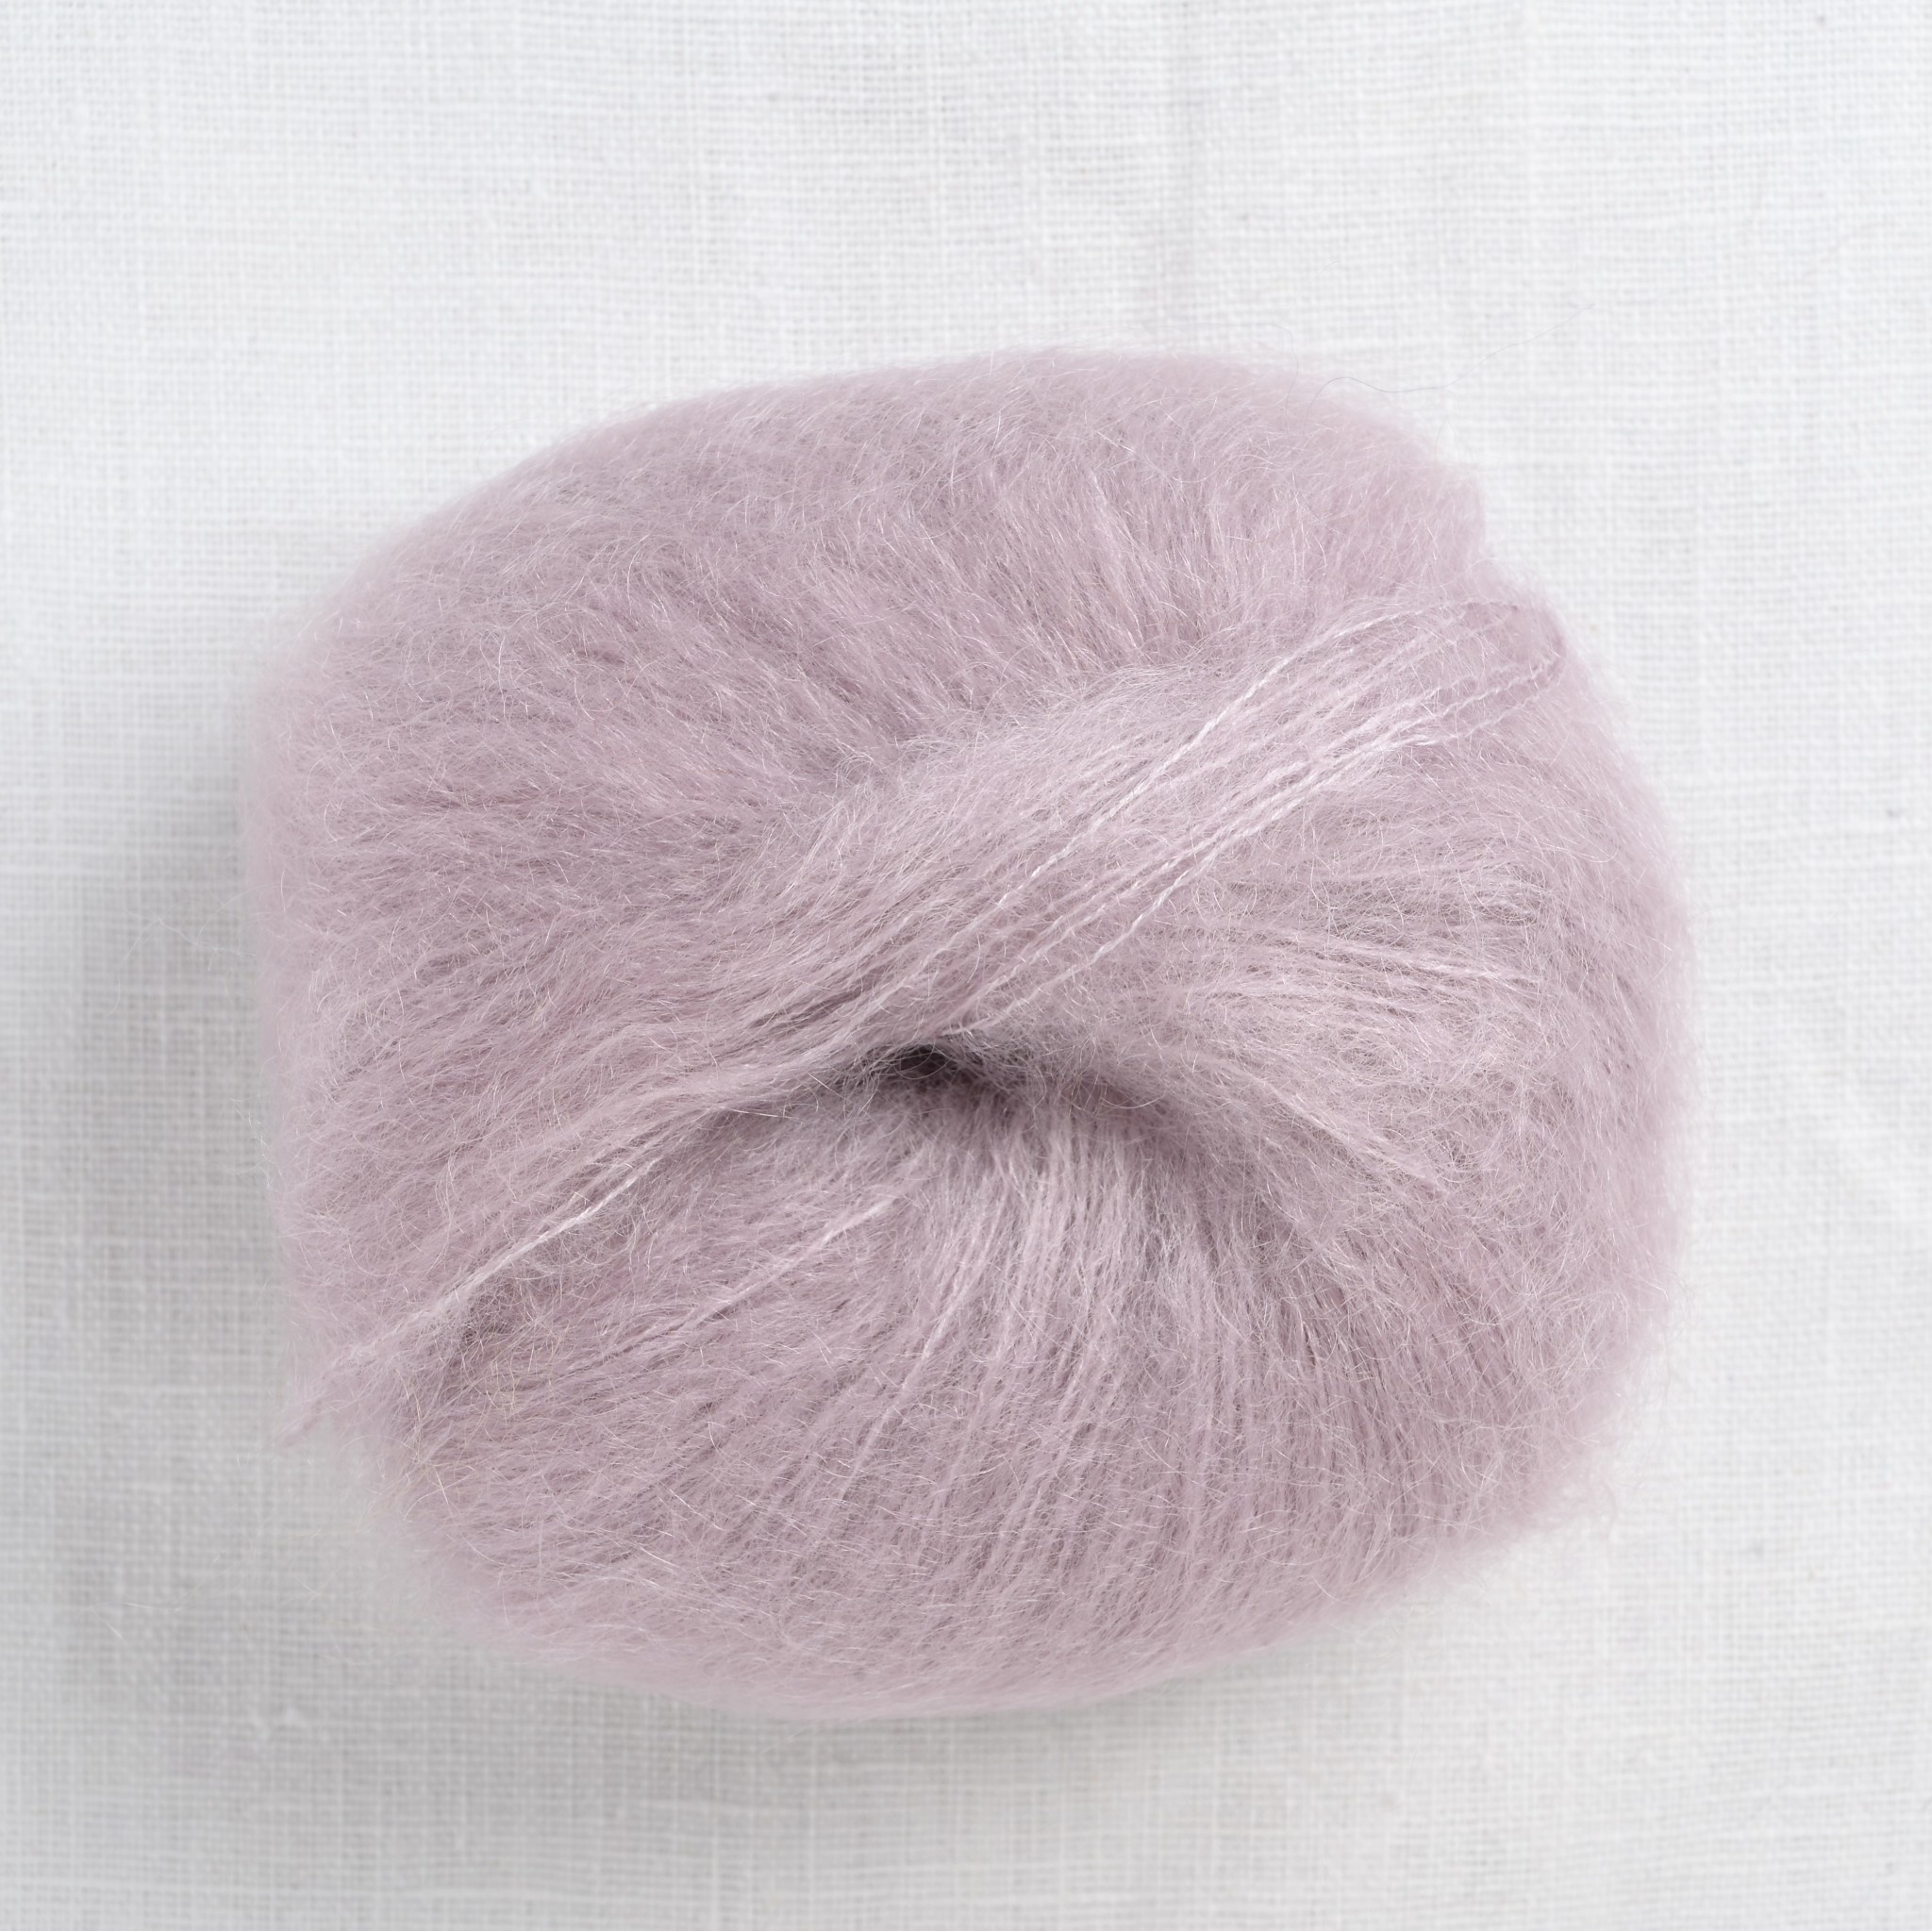 reaktion Betjene Frø Lang Mohair Luxe 209 Whisper - Wool and Company Fine Yarn